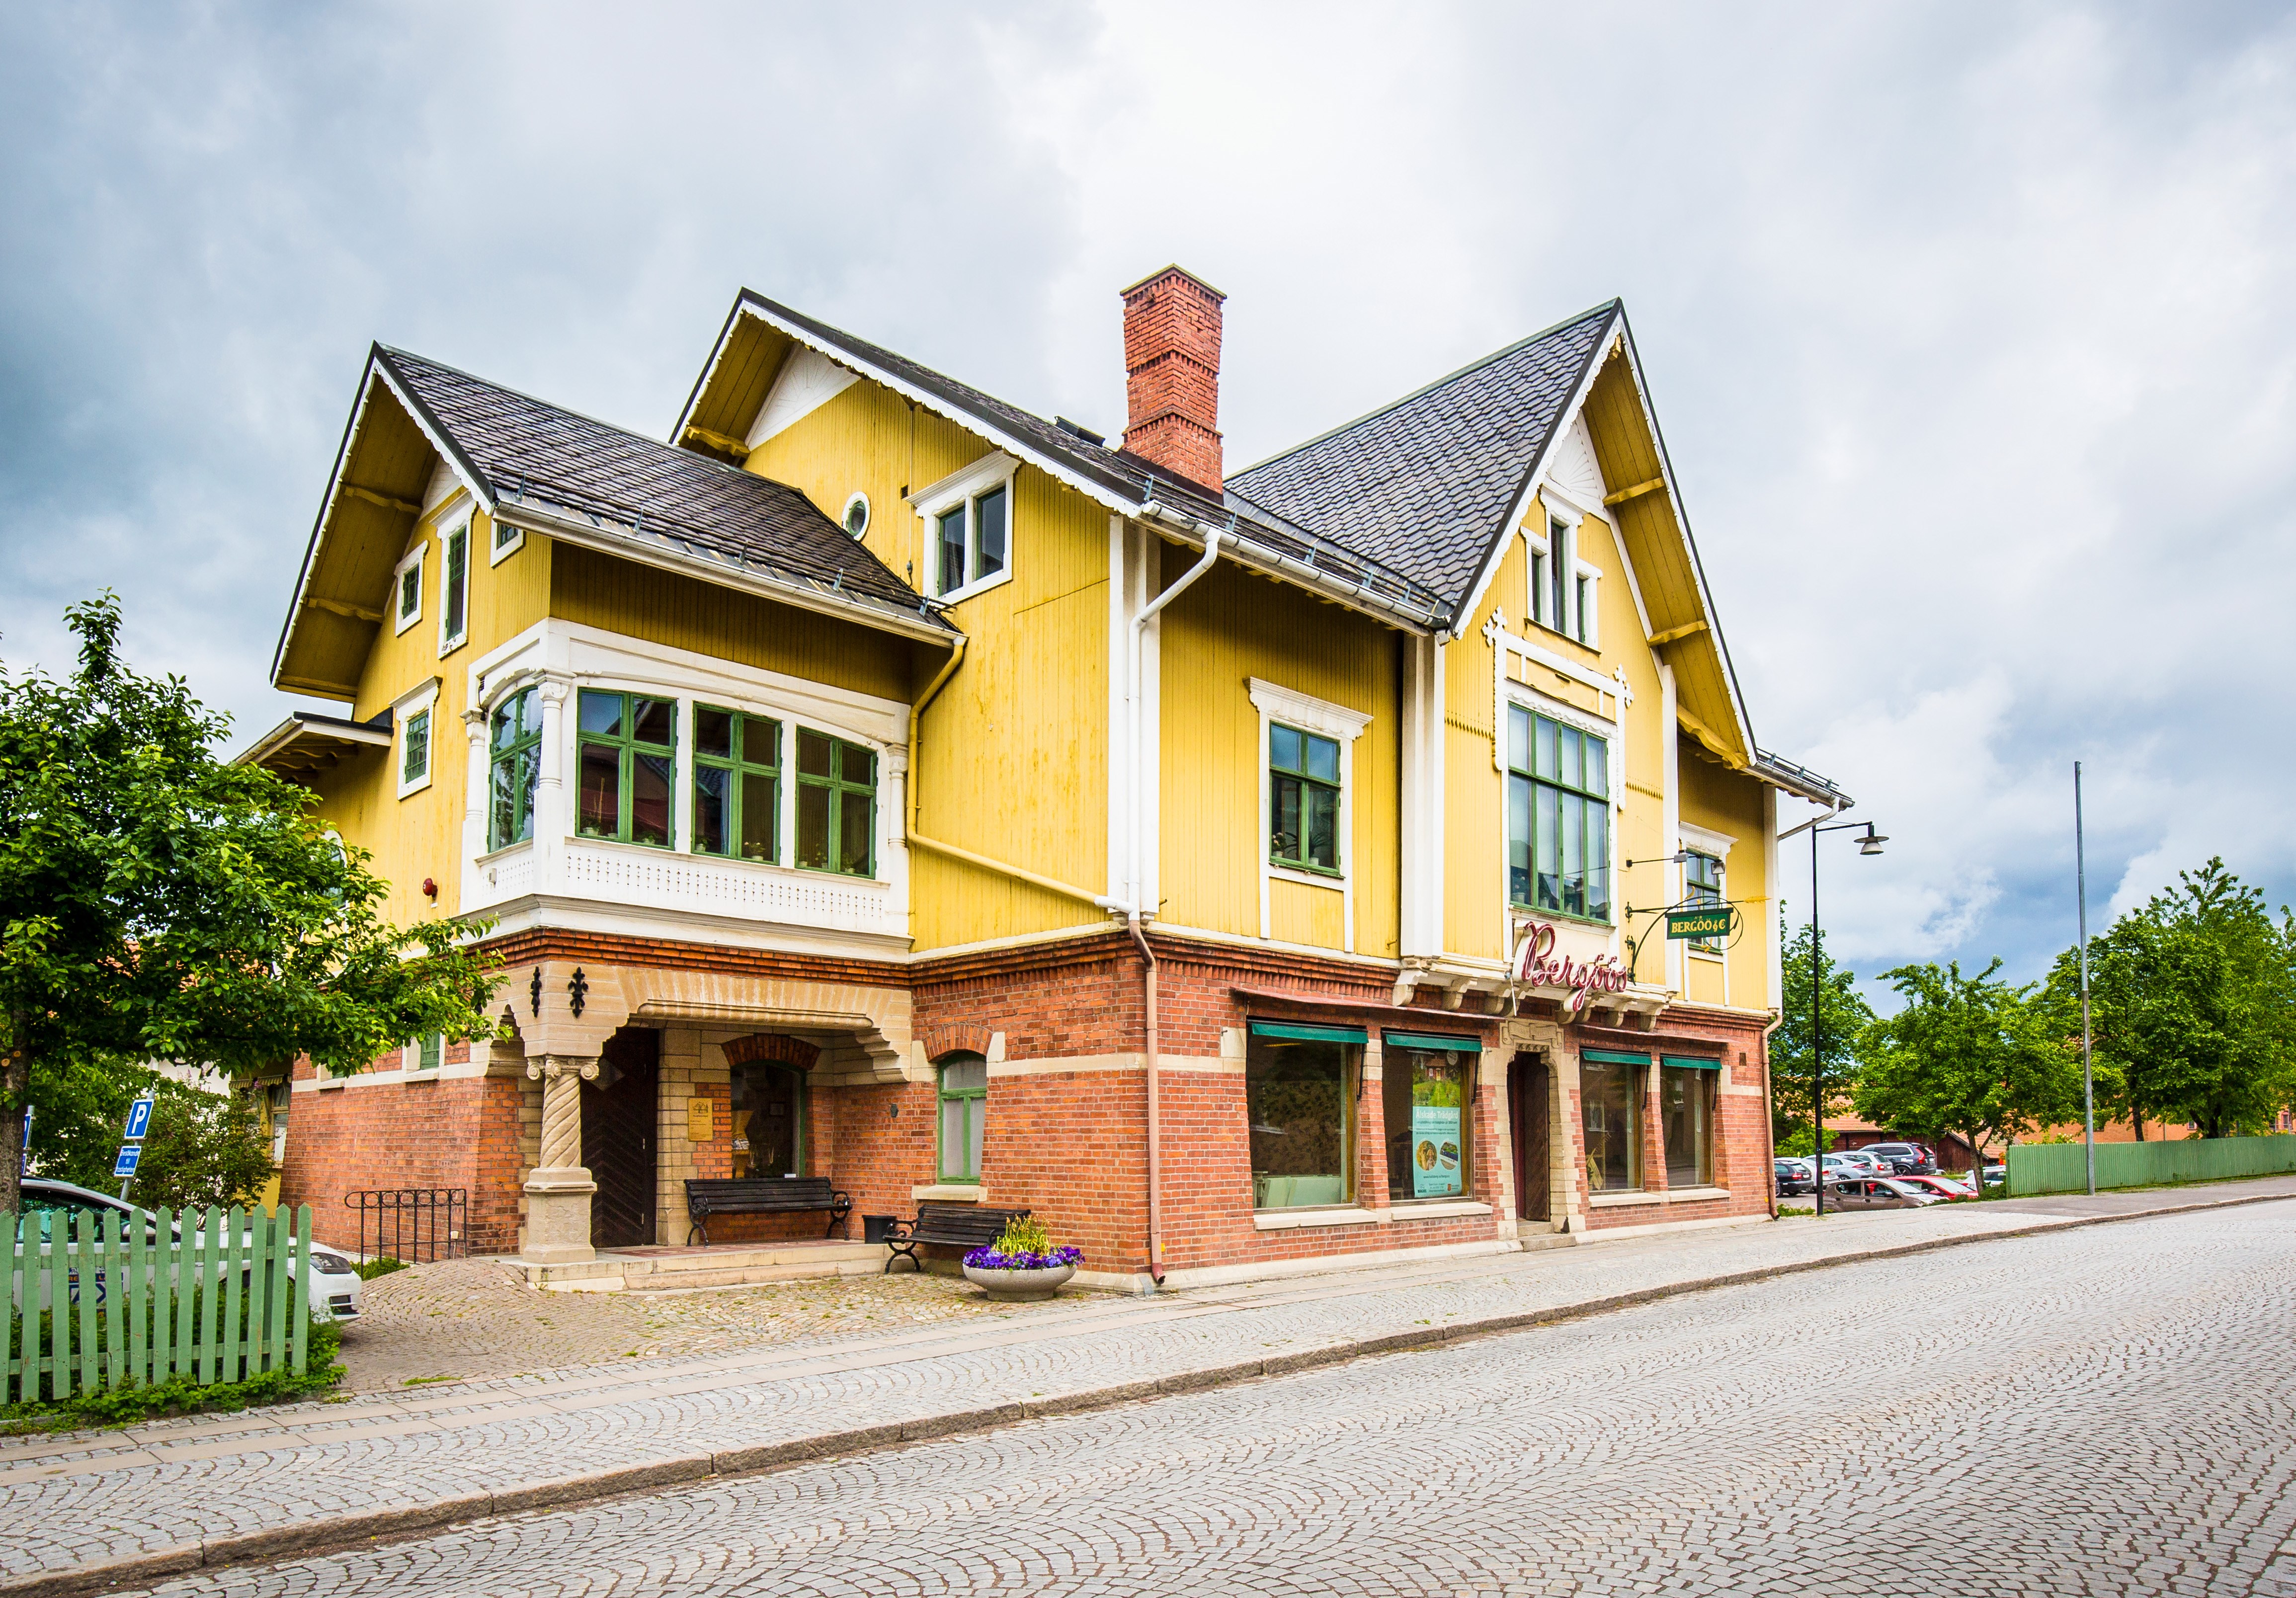 Bergööska huset Hallsberg-foto-per-johansson-procard-3754.jpg